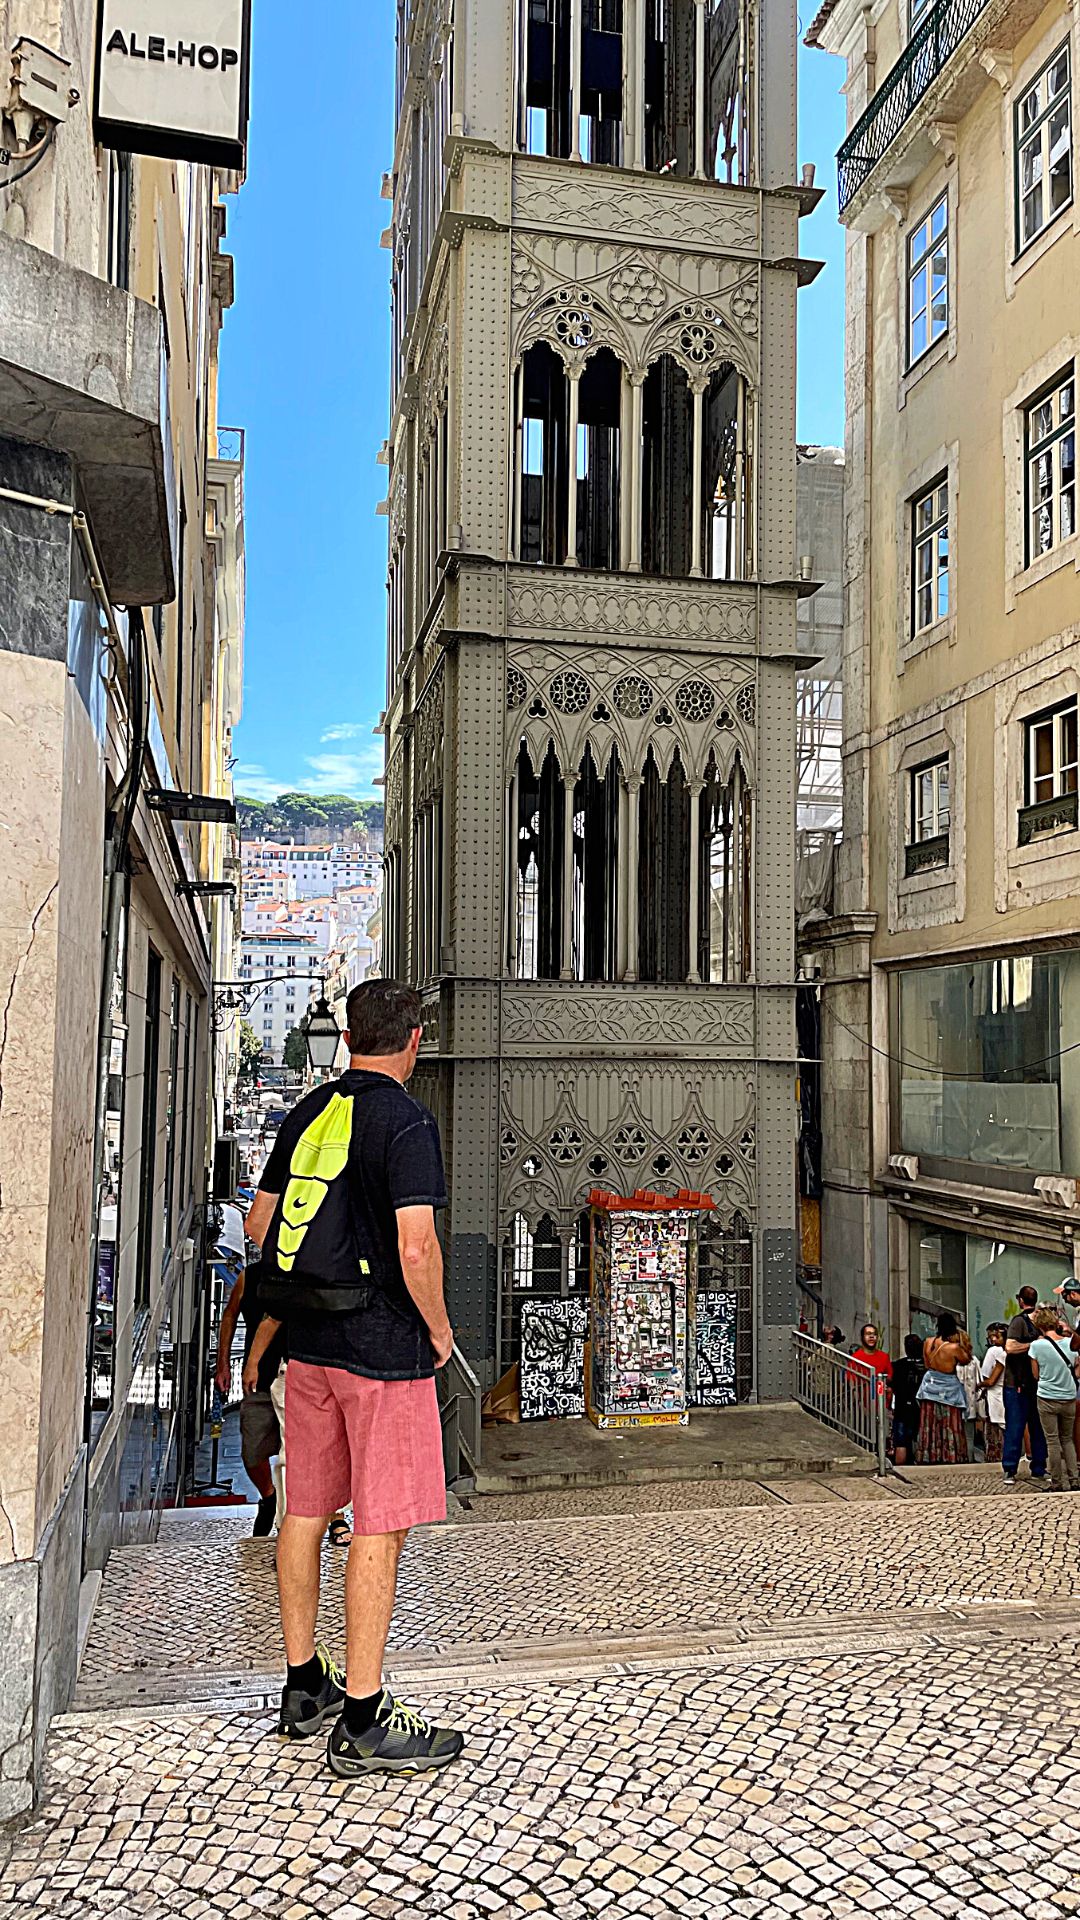 The Santa Justa Lift from Baixa to Carmo